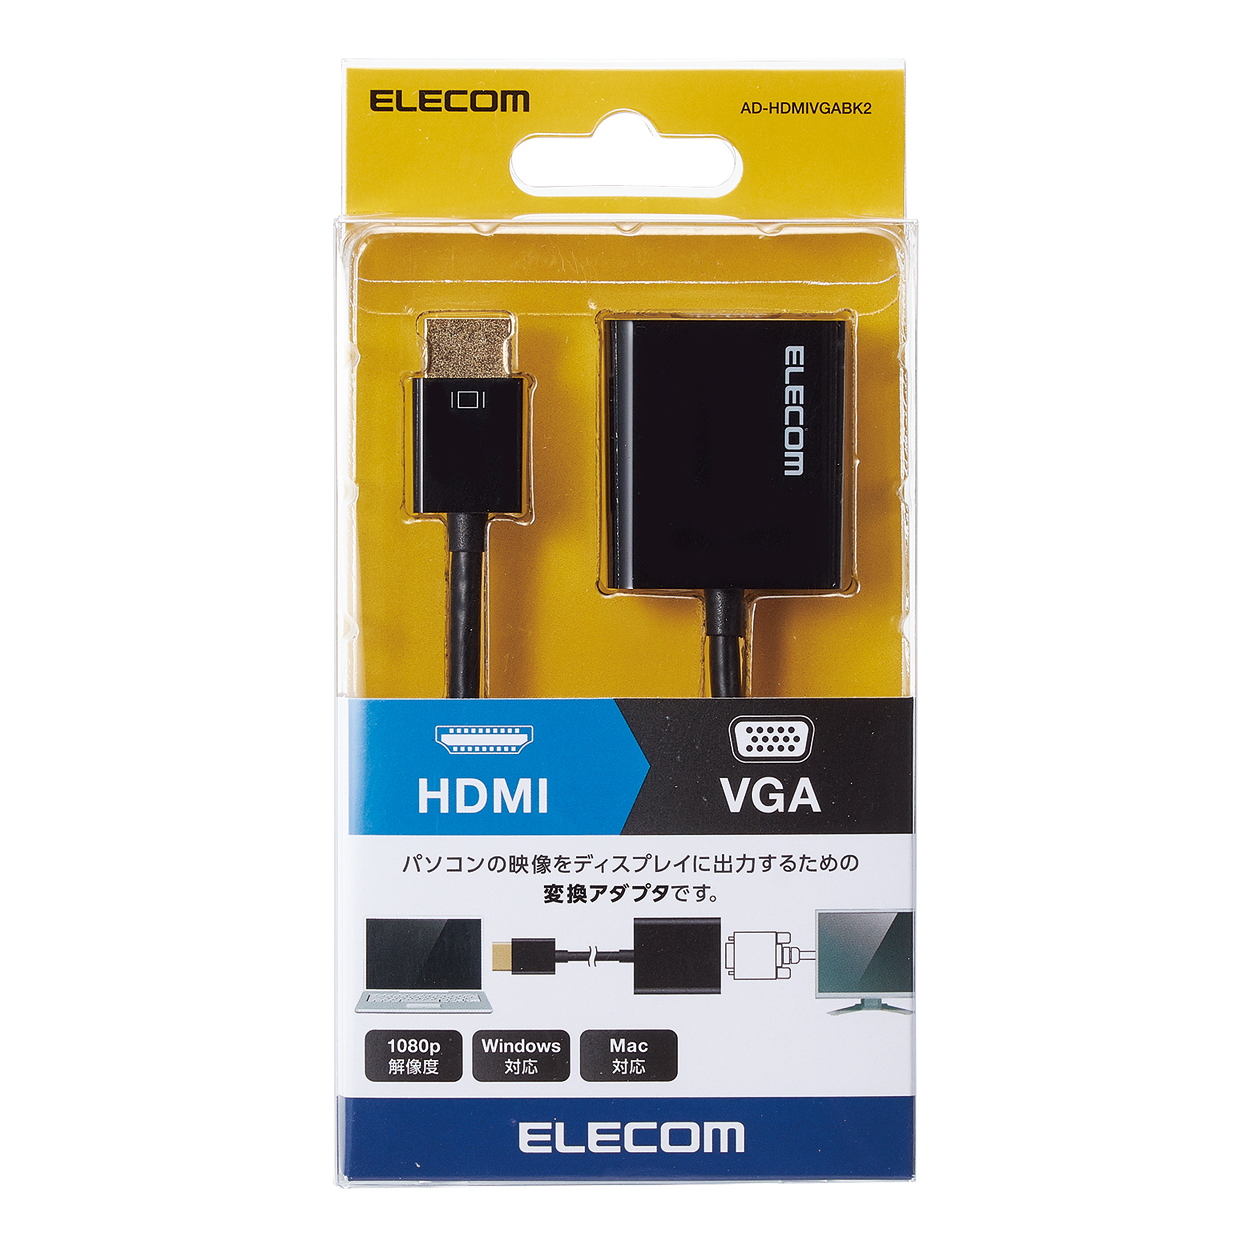 HDMI to VGA 変換アダプタ 変換ケーブル 変換器 1080P D-SUB 15ピン